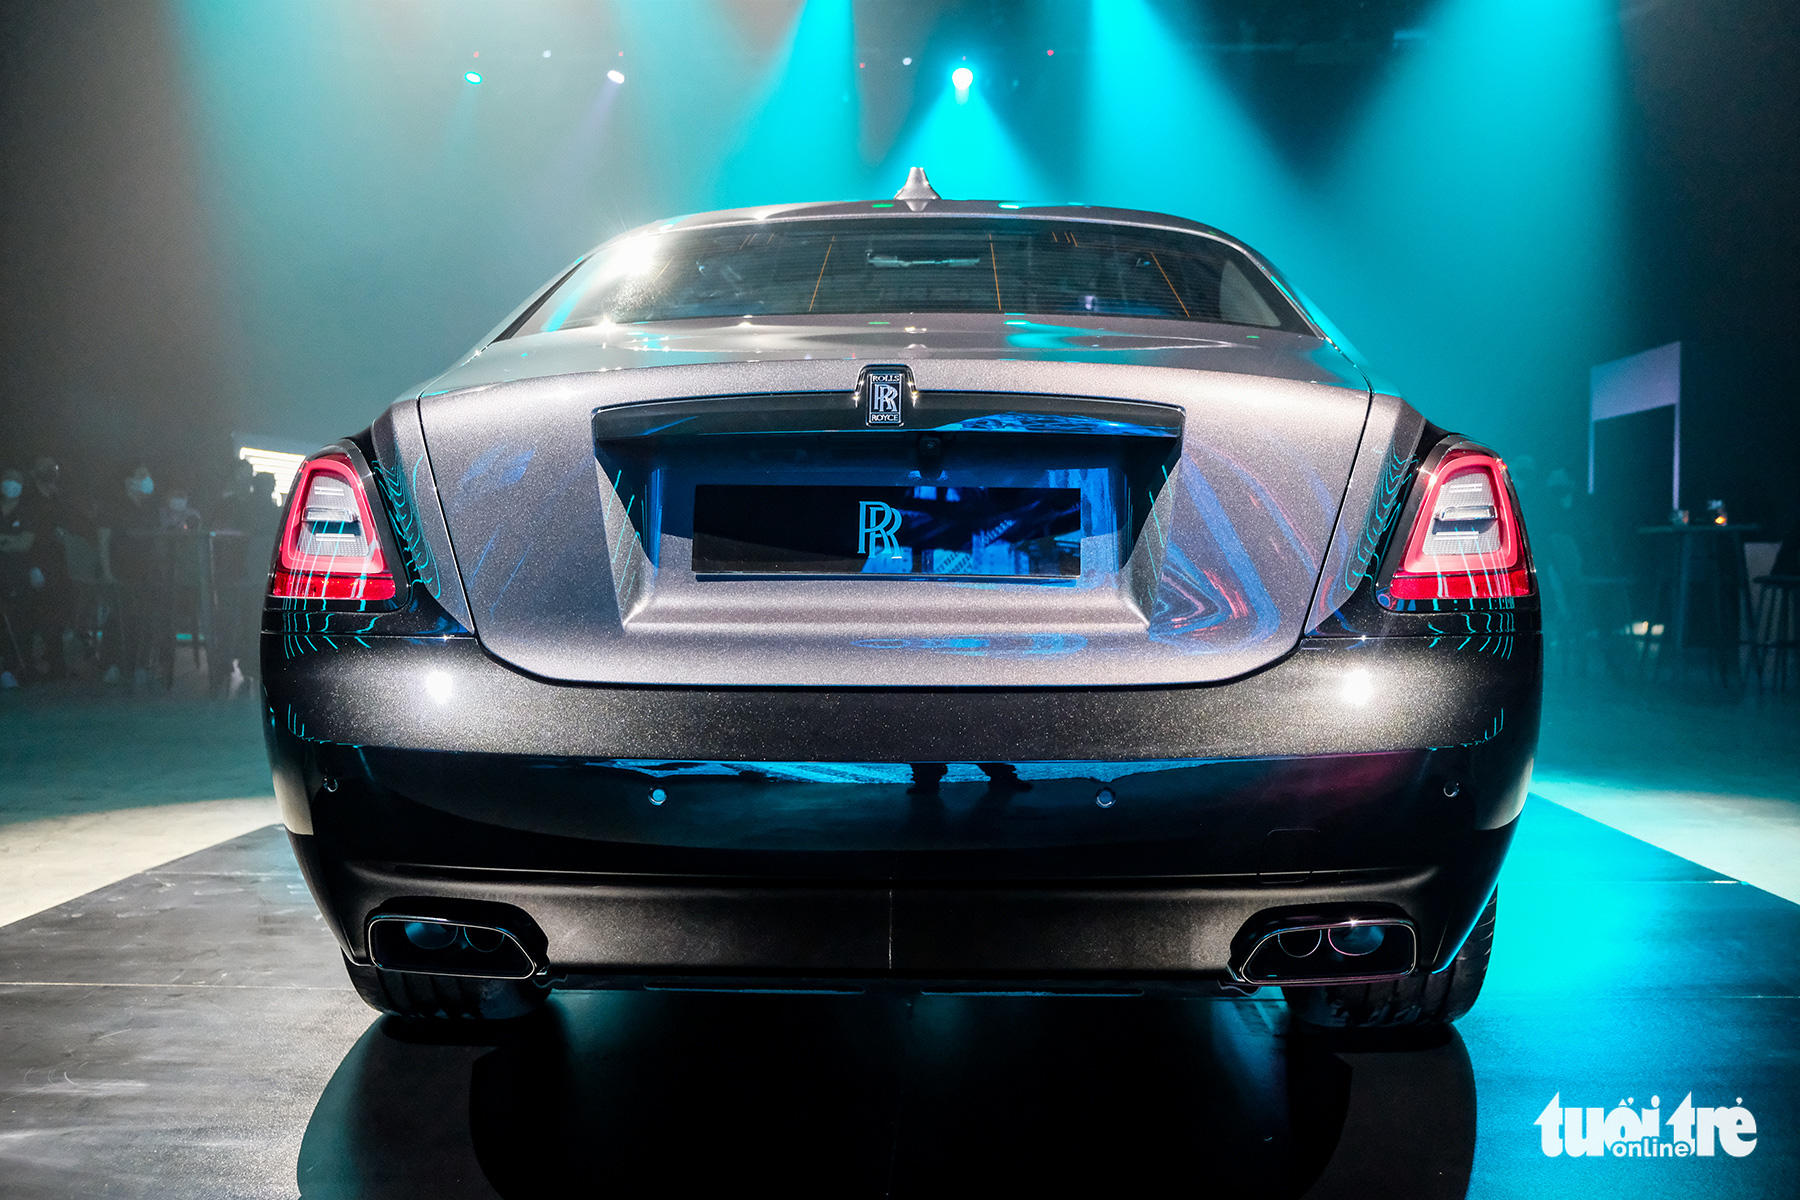 Rolls-Royce Ghost Black Badge thế hệ mới giá từ 33,7 tỉ đồng - sedan đắt thứ 2 Việt Nam